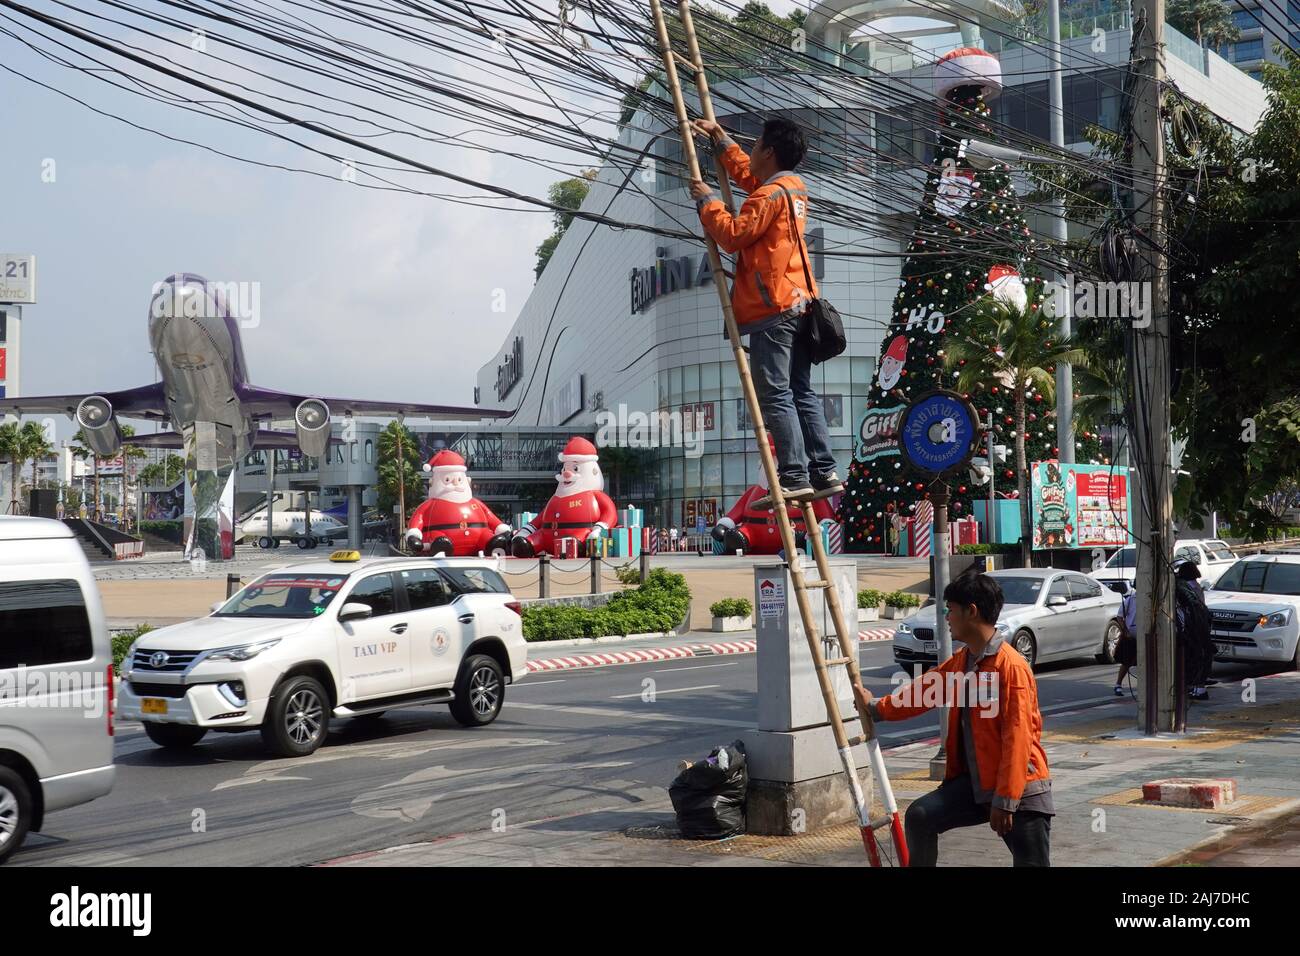 Pattaya, Thailand - Dezember 23, 2019: der Mann, der auf einem Bambus Leiter lehnt sich gegen die power line. Anschlußklemme 21 Shopping Mall auf dem Hintergrund. Stockfoto